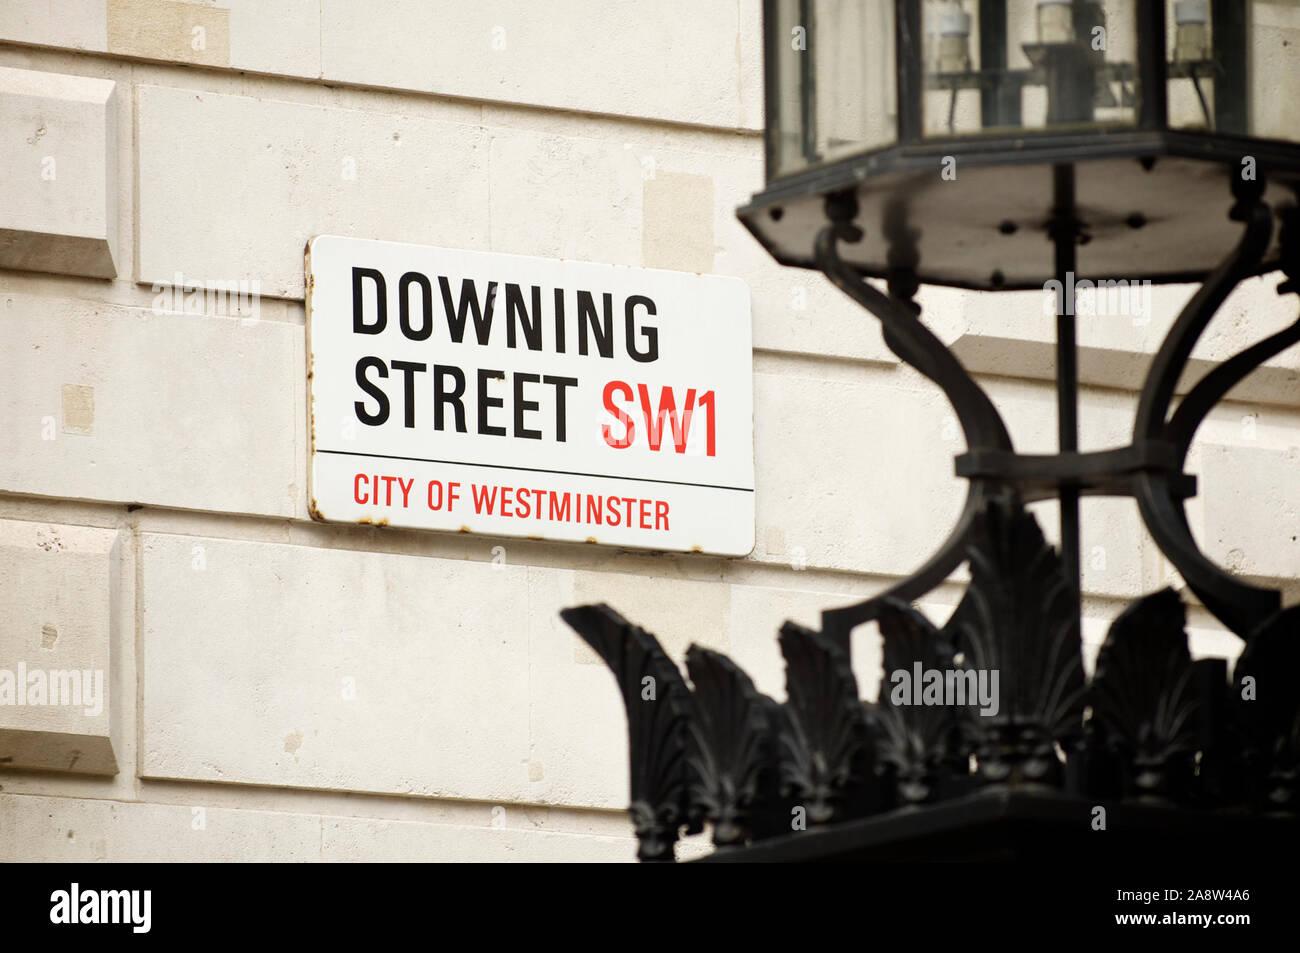 Londra - Giugno 2011: un cartello stradale per Downing Street, dove la residenza del Primo ministro è situato, appesa sul muro di Whitehall. Foto Stock